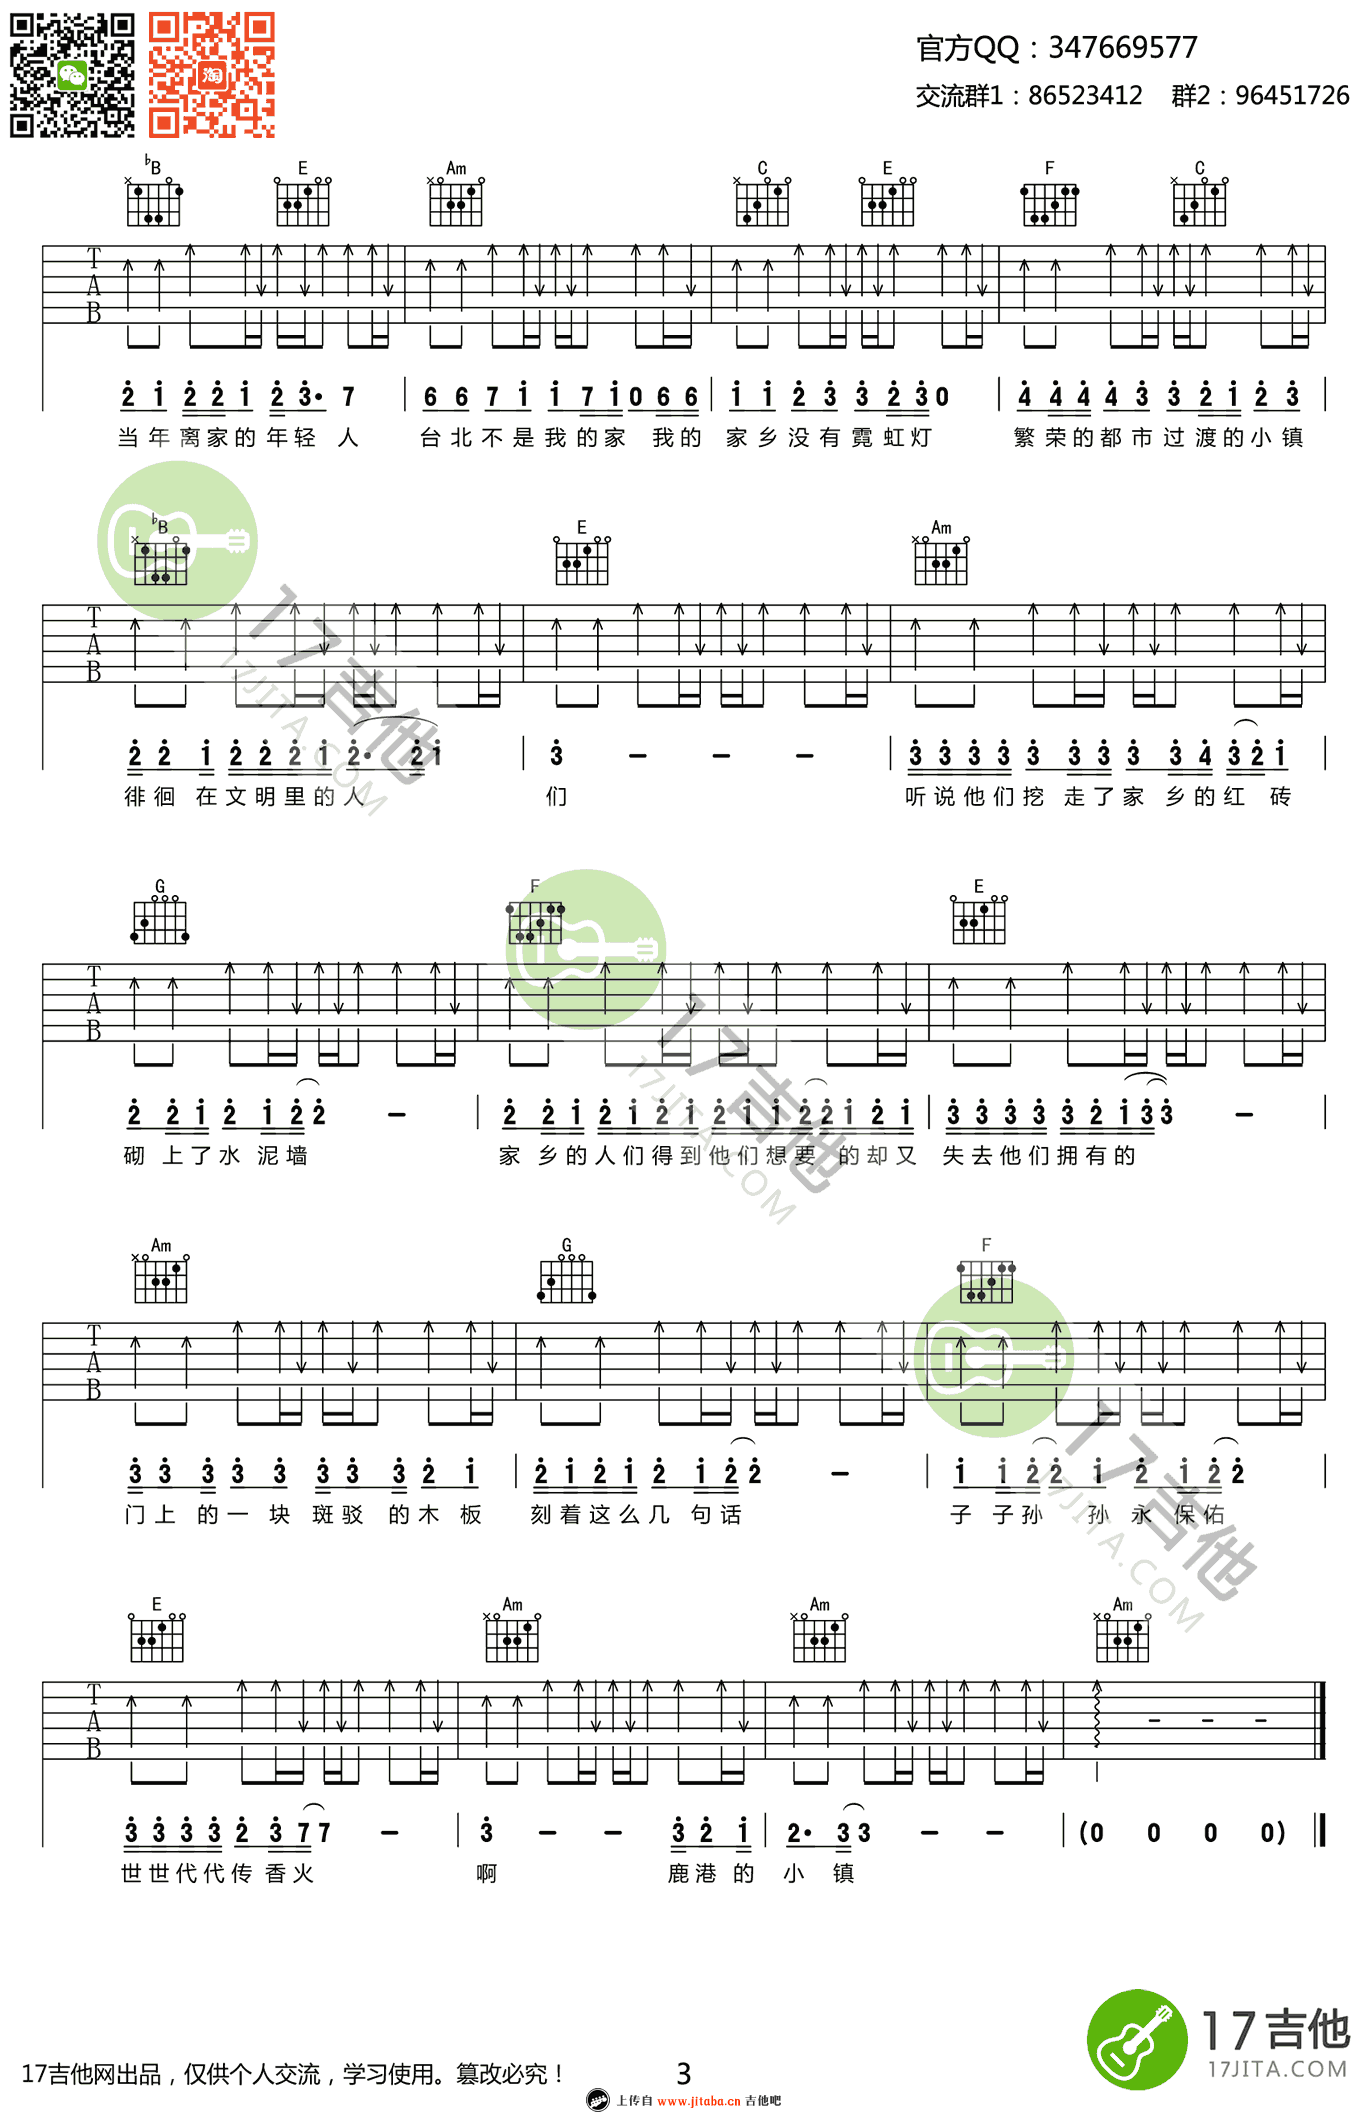 罗大佑【鹿港小镇吉他谱】_在线免费打印下载-爱弹琴乐谱网